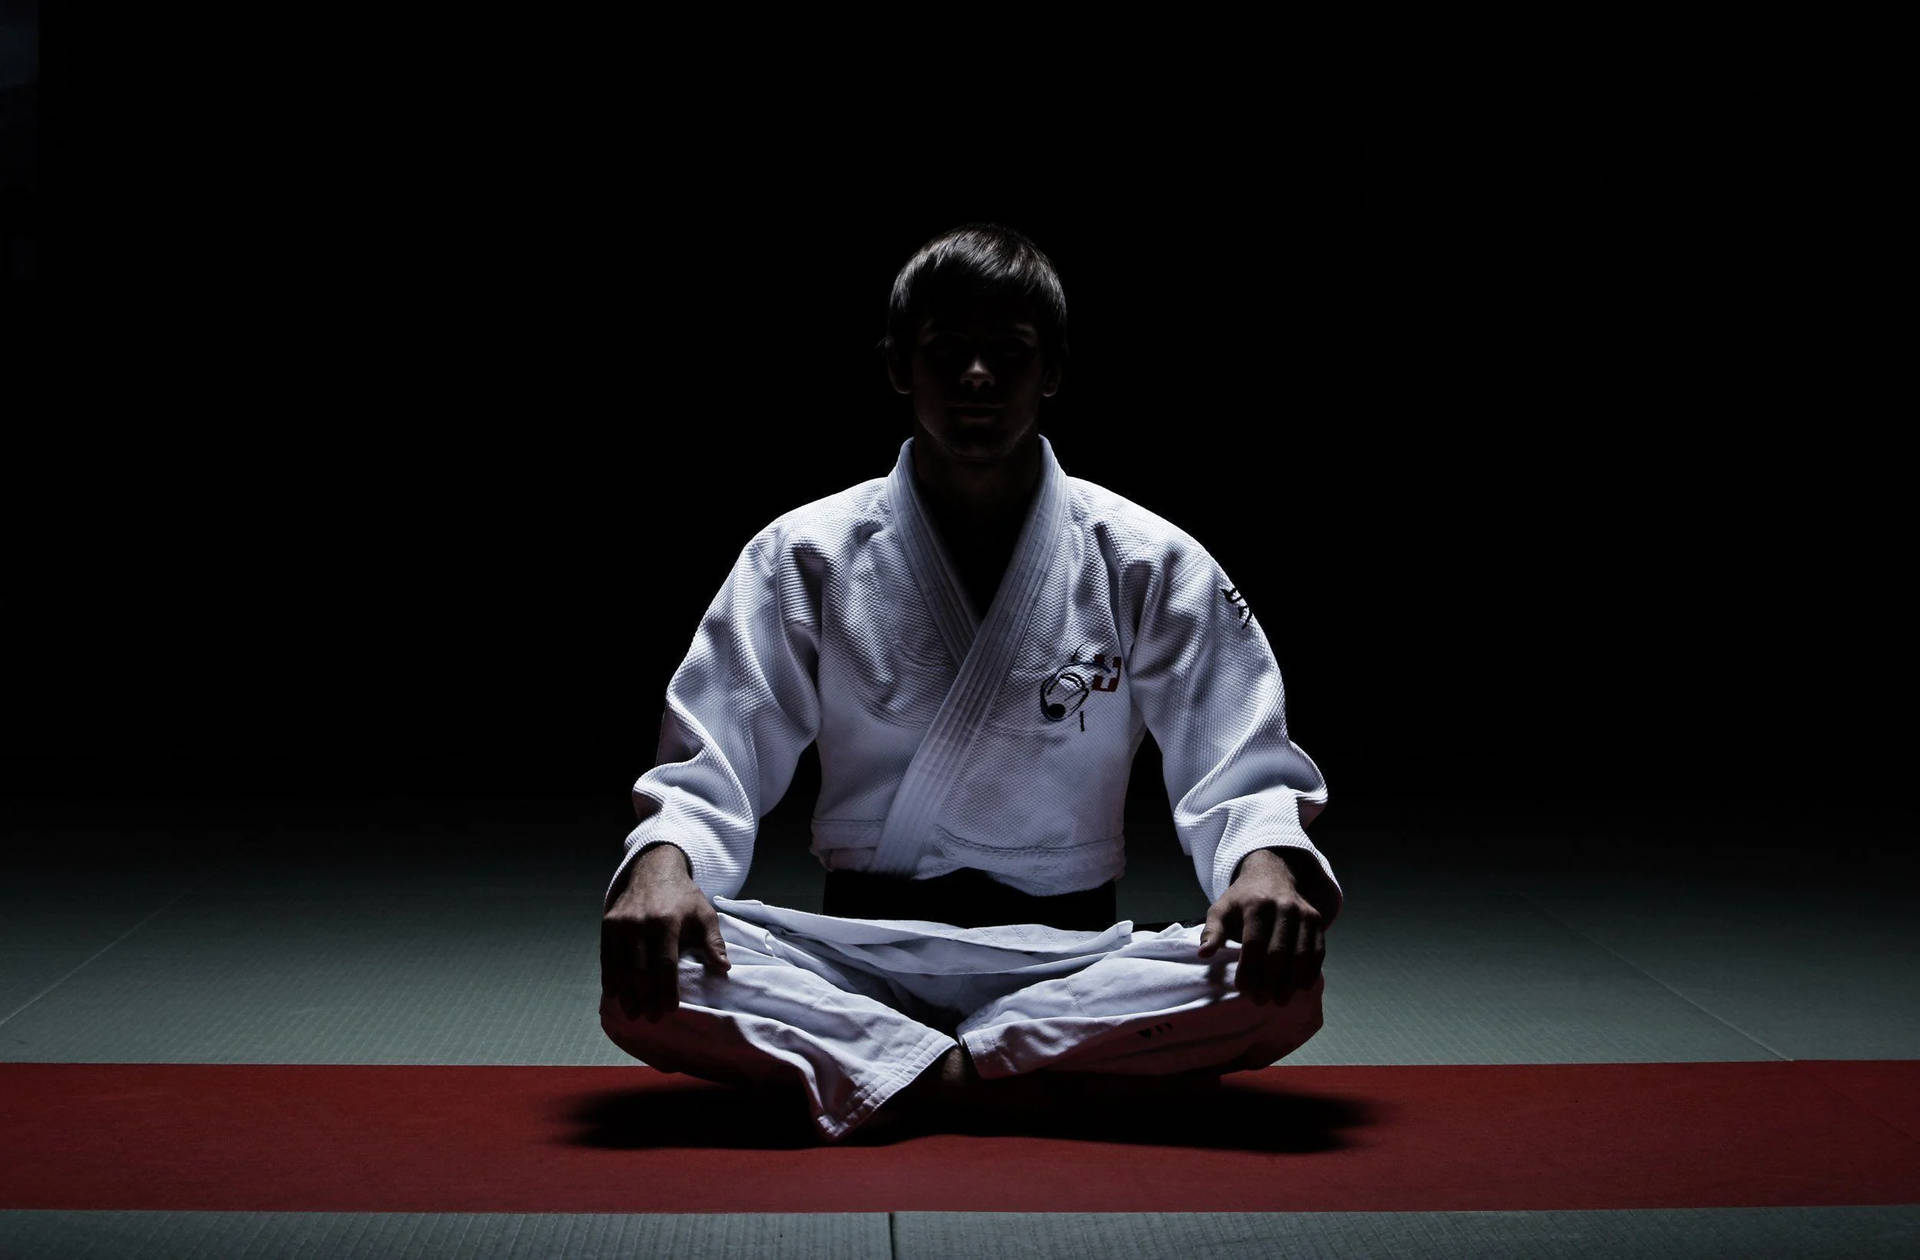 Download Judo In The Dark Wallpaper | Wallpapers.com